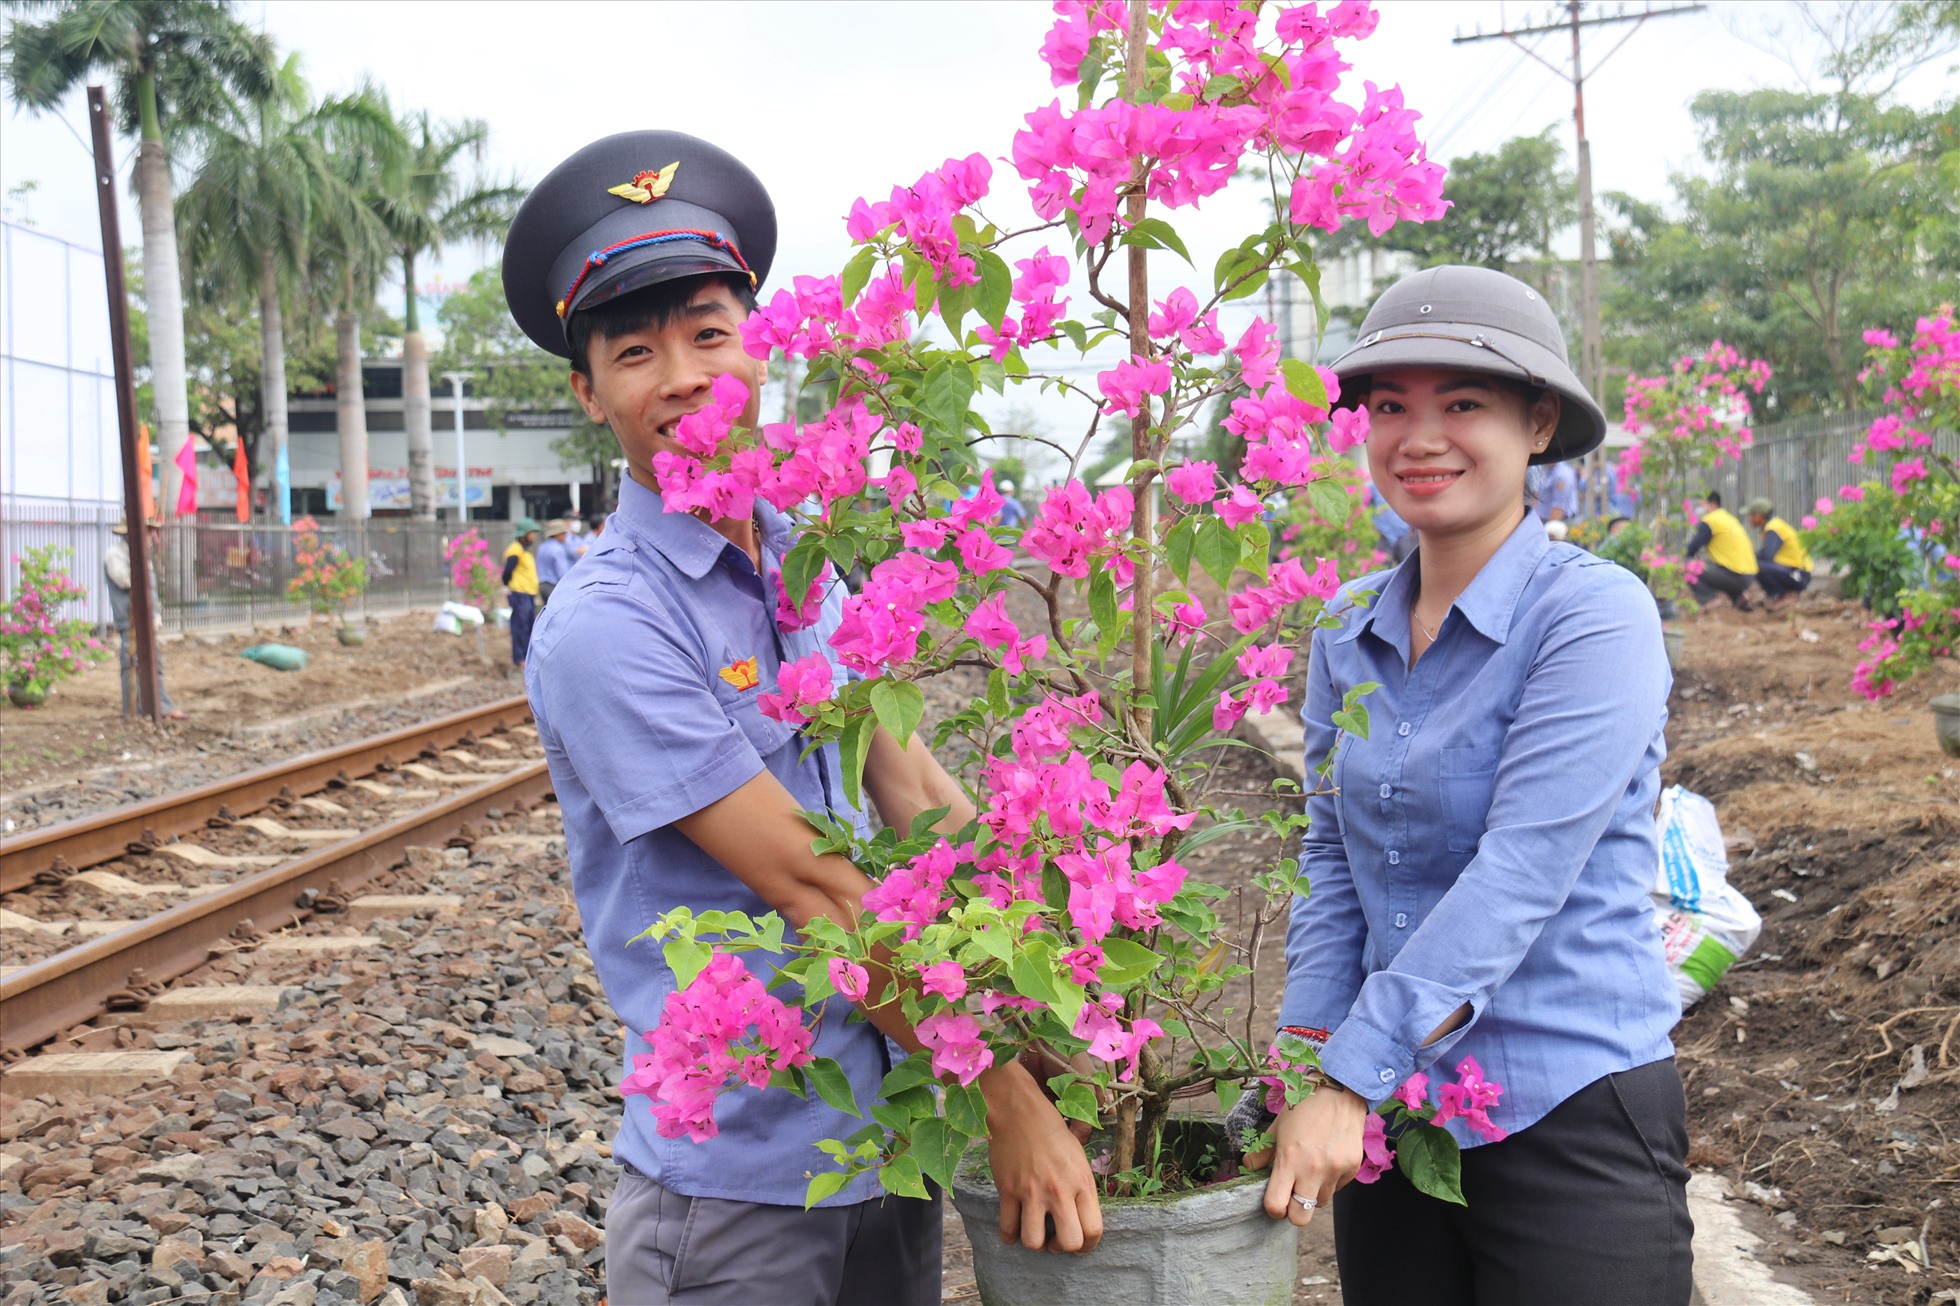 Mỗi cán bộ đoàn viên đường sắt Phú Khánh lan tỏa hành động trông hoa, làm đẹp môi trường xung quanh, tạo thêm sự thân thiện về hình ảnh của đường sắt và của địa phương trong con mắt khách du lịch trong nước và quốc tế. Ảnh: Phương Linh